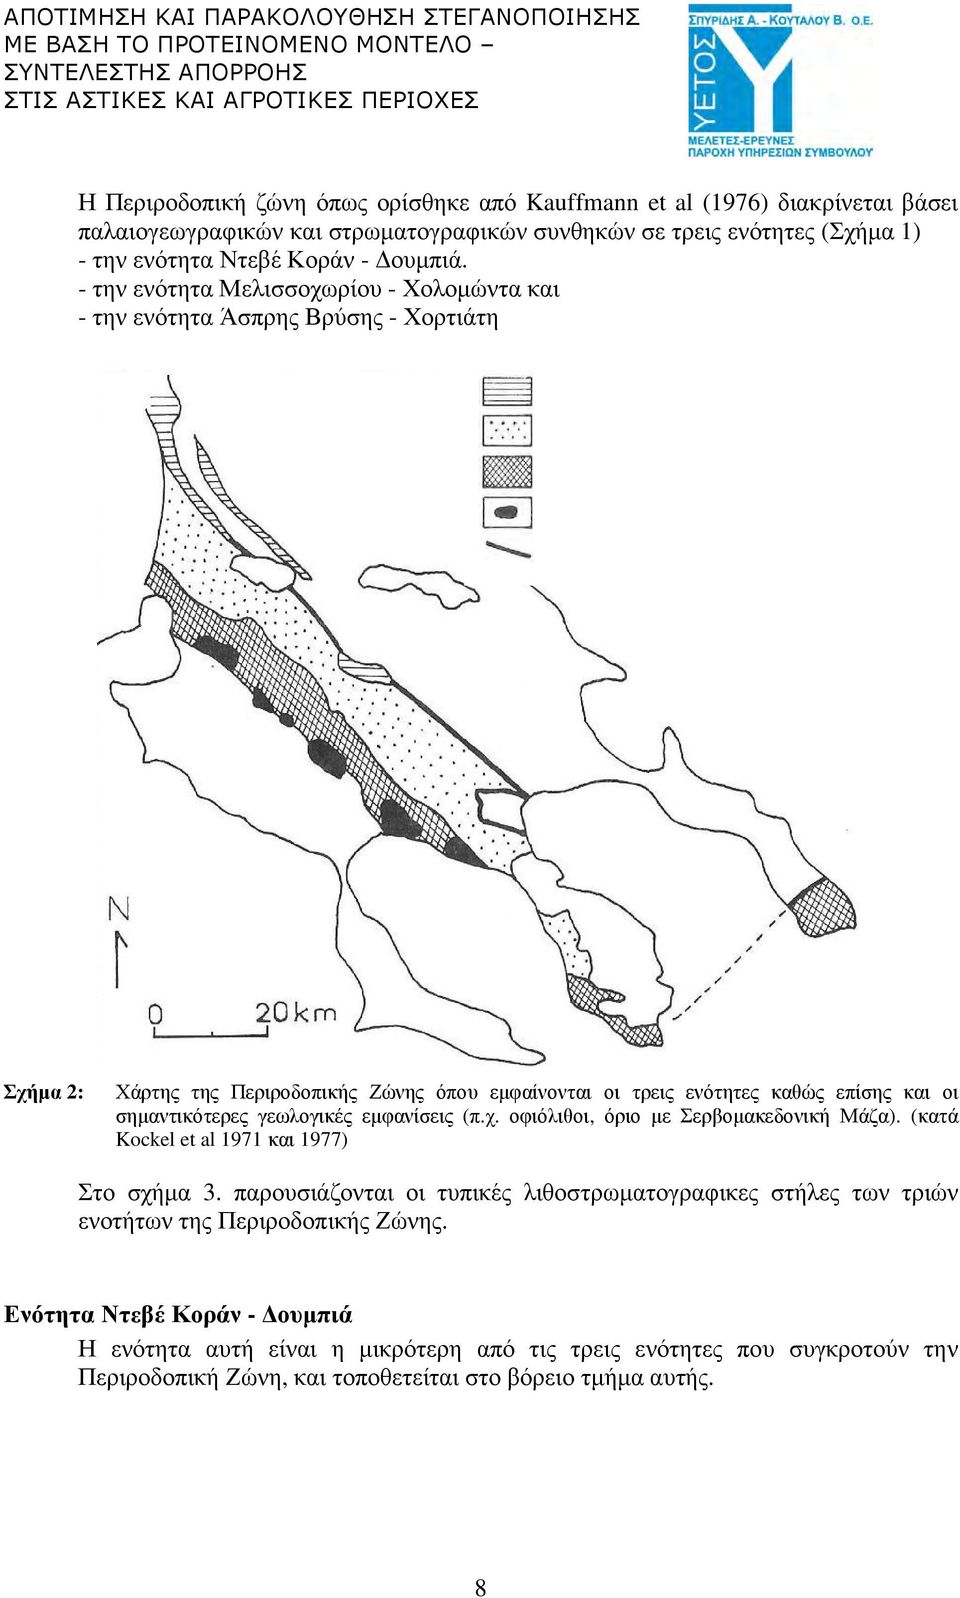 σηµαντικότερες γεωλογικές εµφανίσεις (π.χ. οφιόλιθοι, όριο µε Σερβοµακεδονική Μάζα). (κατά Kockel et al 1971 και 1977) Στο σχήµα 3.